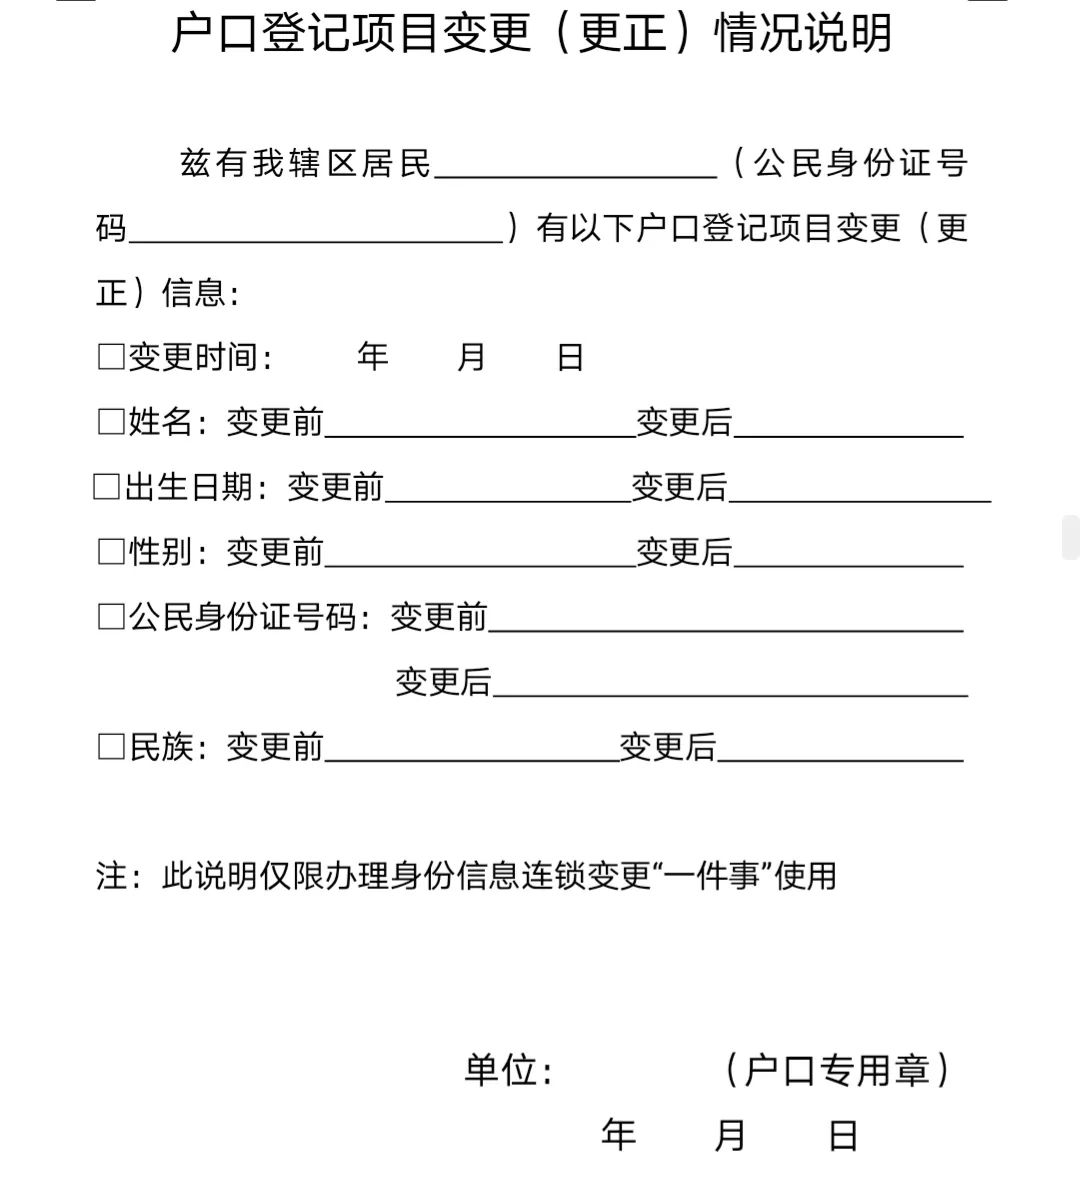 中国案件信息公开网查询系统（全国案件查询公示系统） | 旗凯号